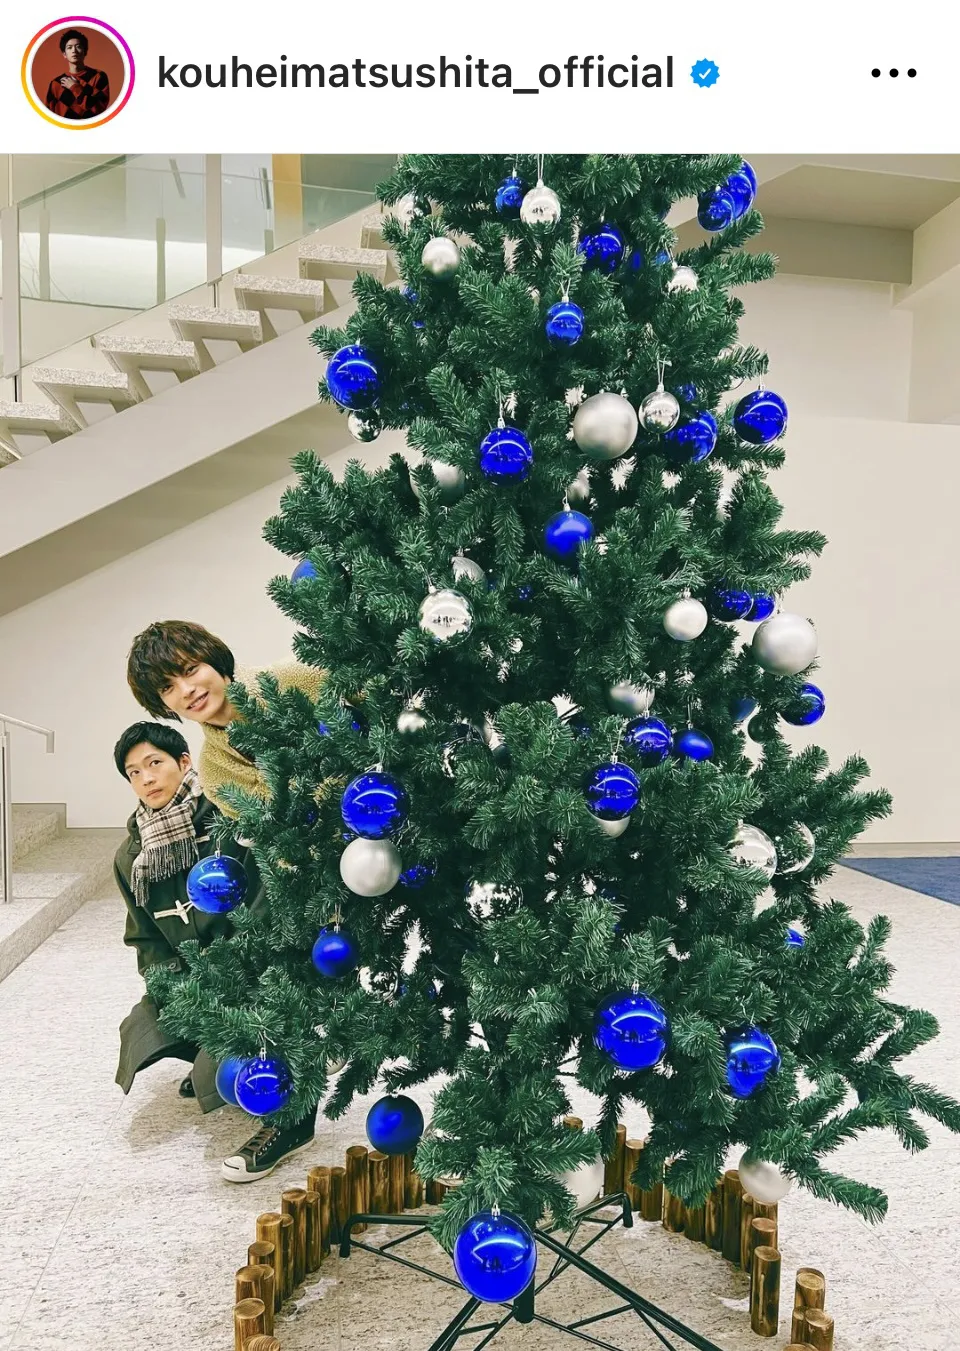 【写真】松下洸平と神尾楓珠がクリスマスツリーからひょっこり顔を出す姿がかわいすぎる